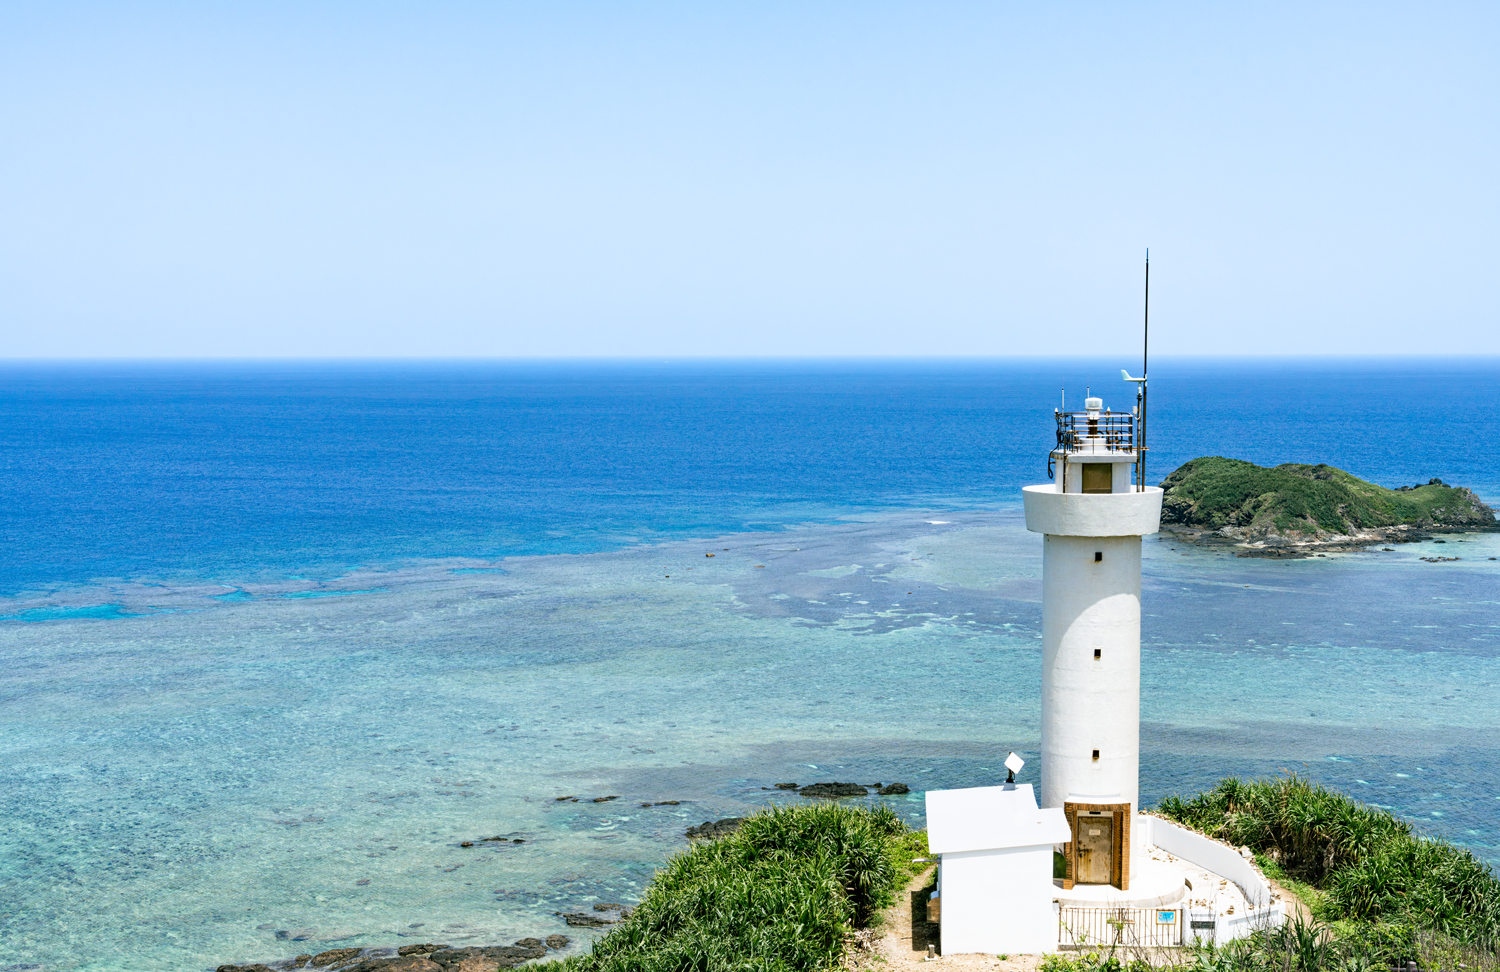 平久保崎灯台と海 / Hirakubozaki Lighthouse and the sea